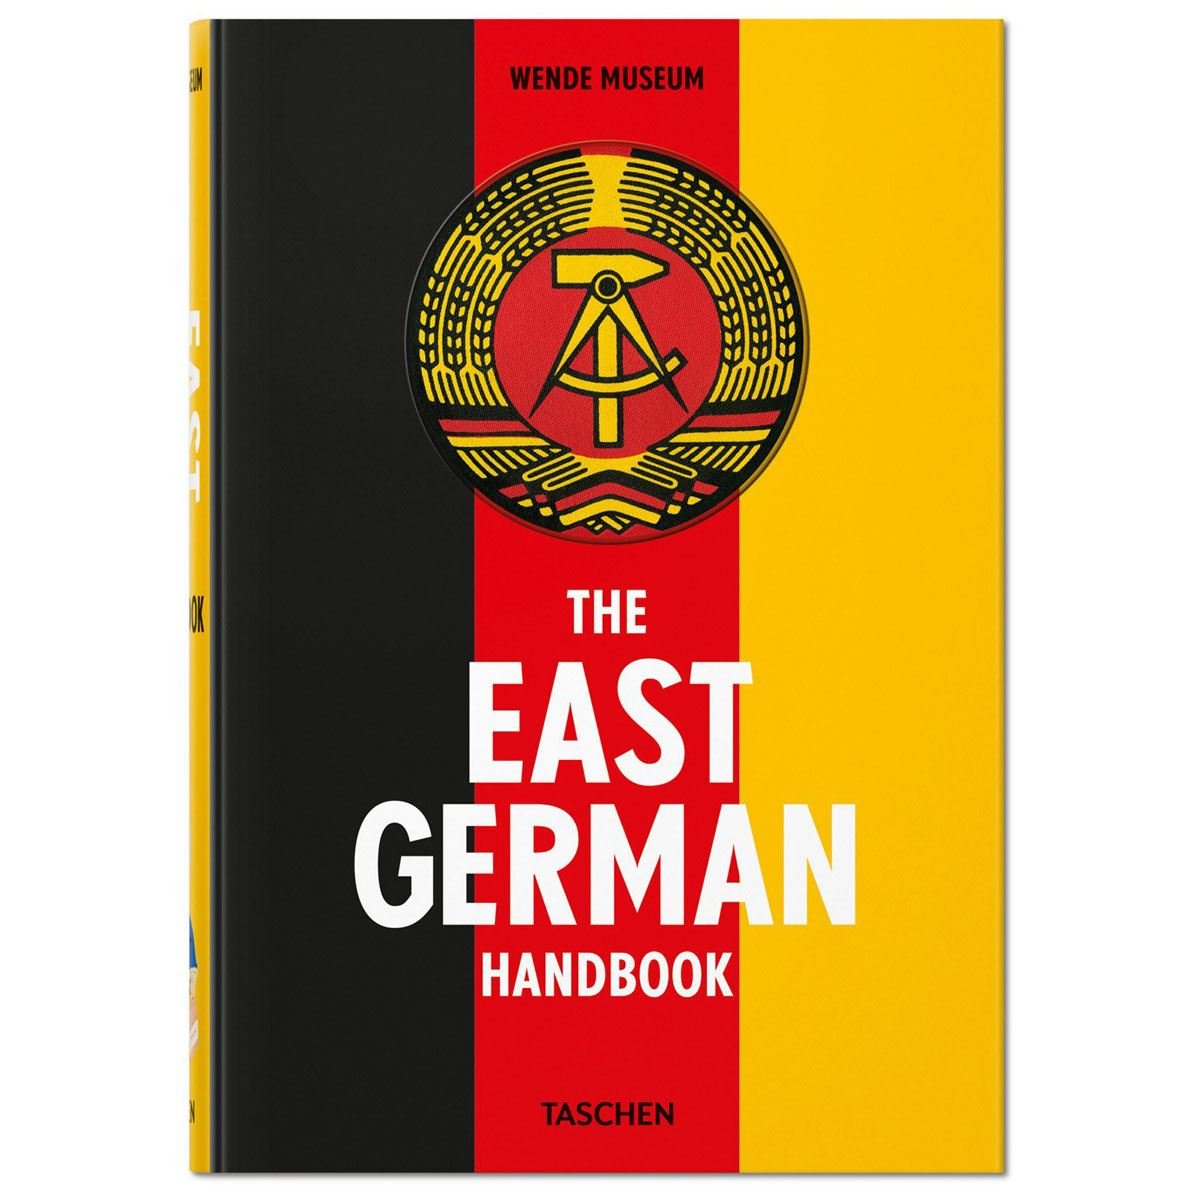 The east German